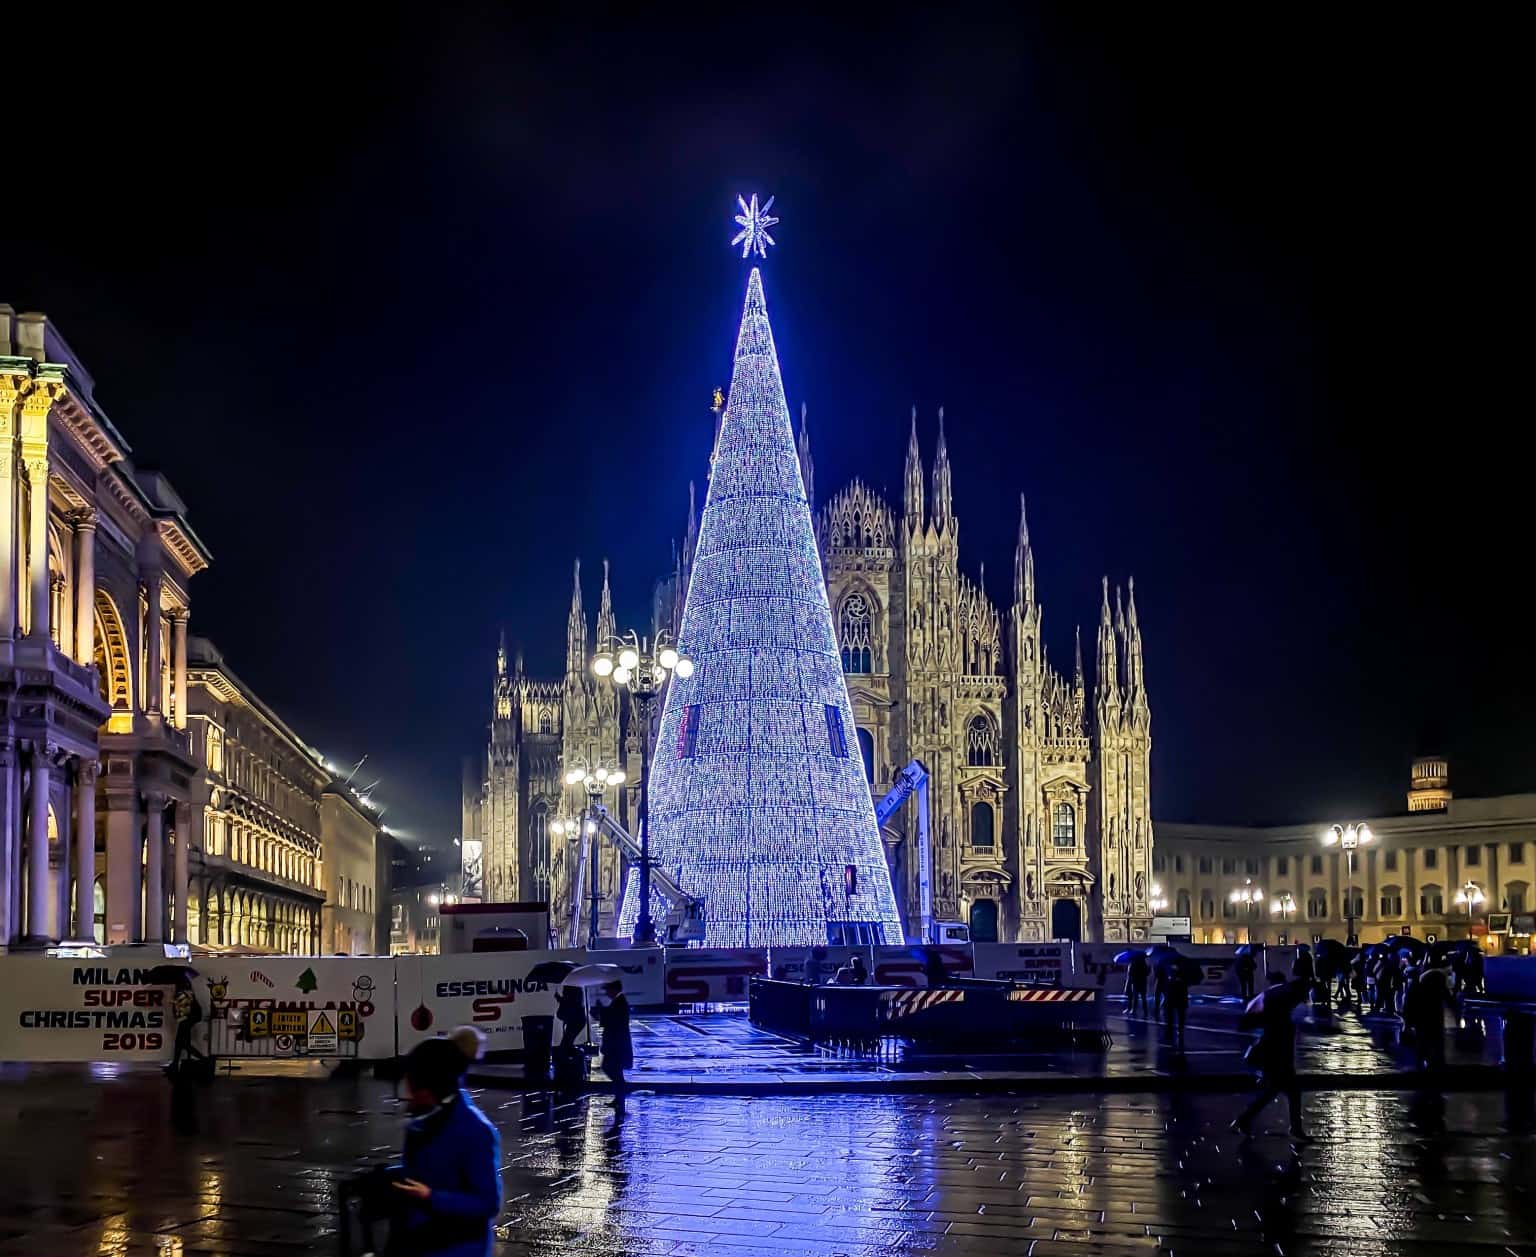 Regali Di Natale Esselunga.Albero Di Natale Milano Grandi Giochi Di Luce Per L Albero Firmato Esselunga